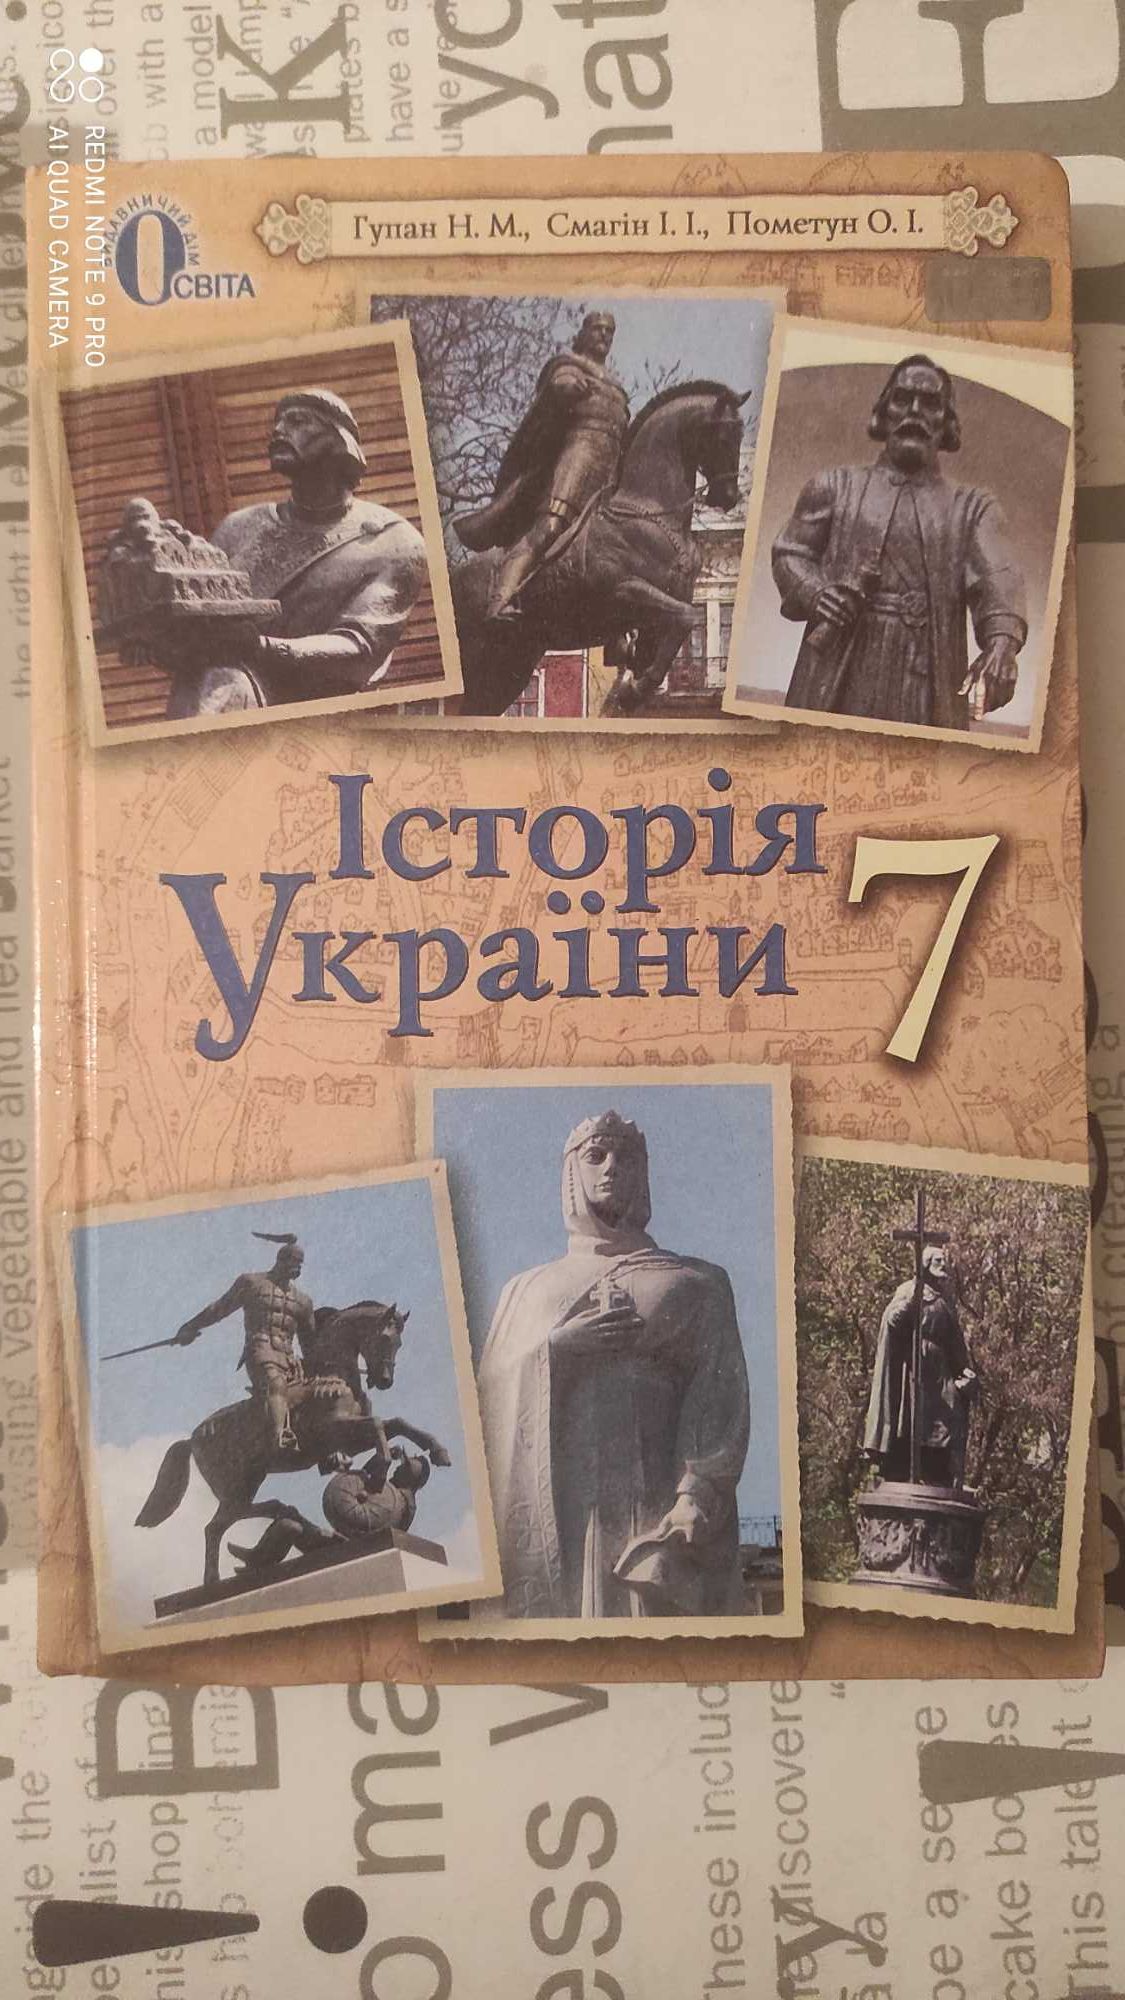 Історія України 7 клас,Гупан,Смагін,Пометун.